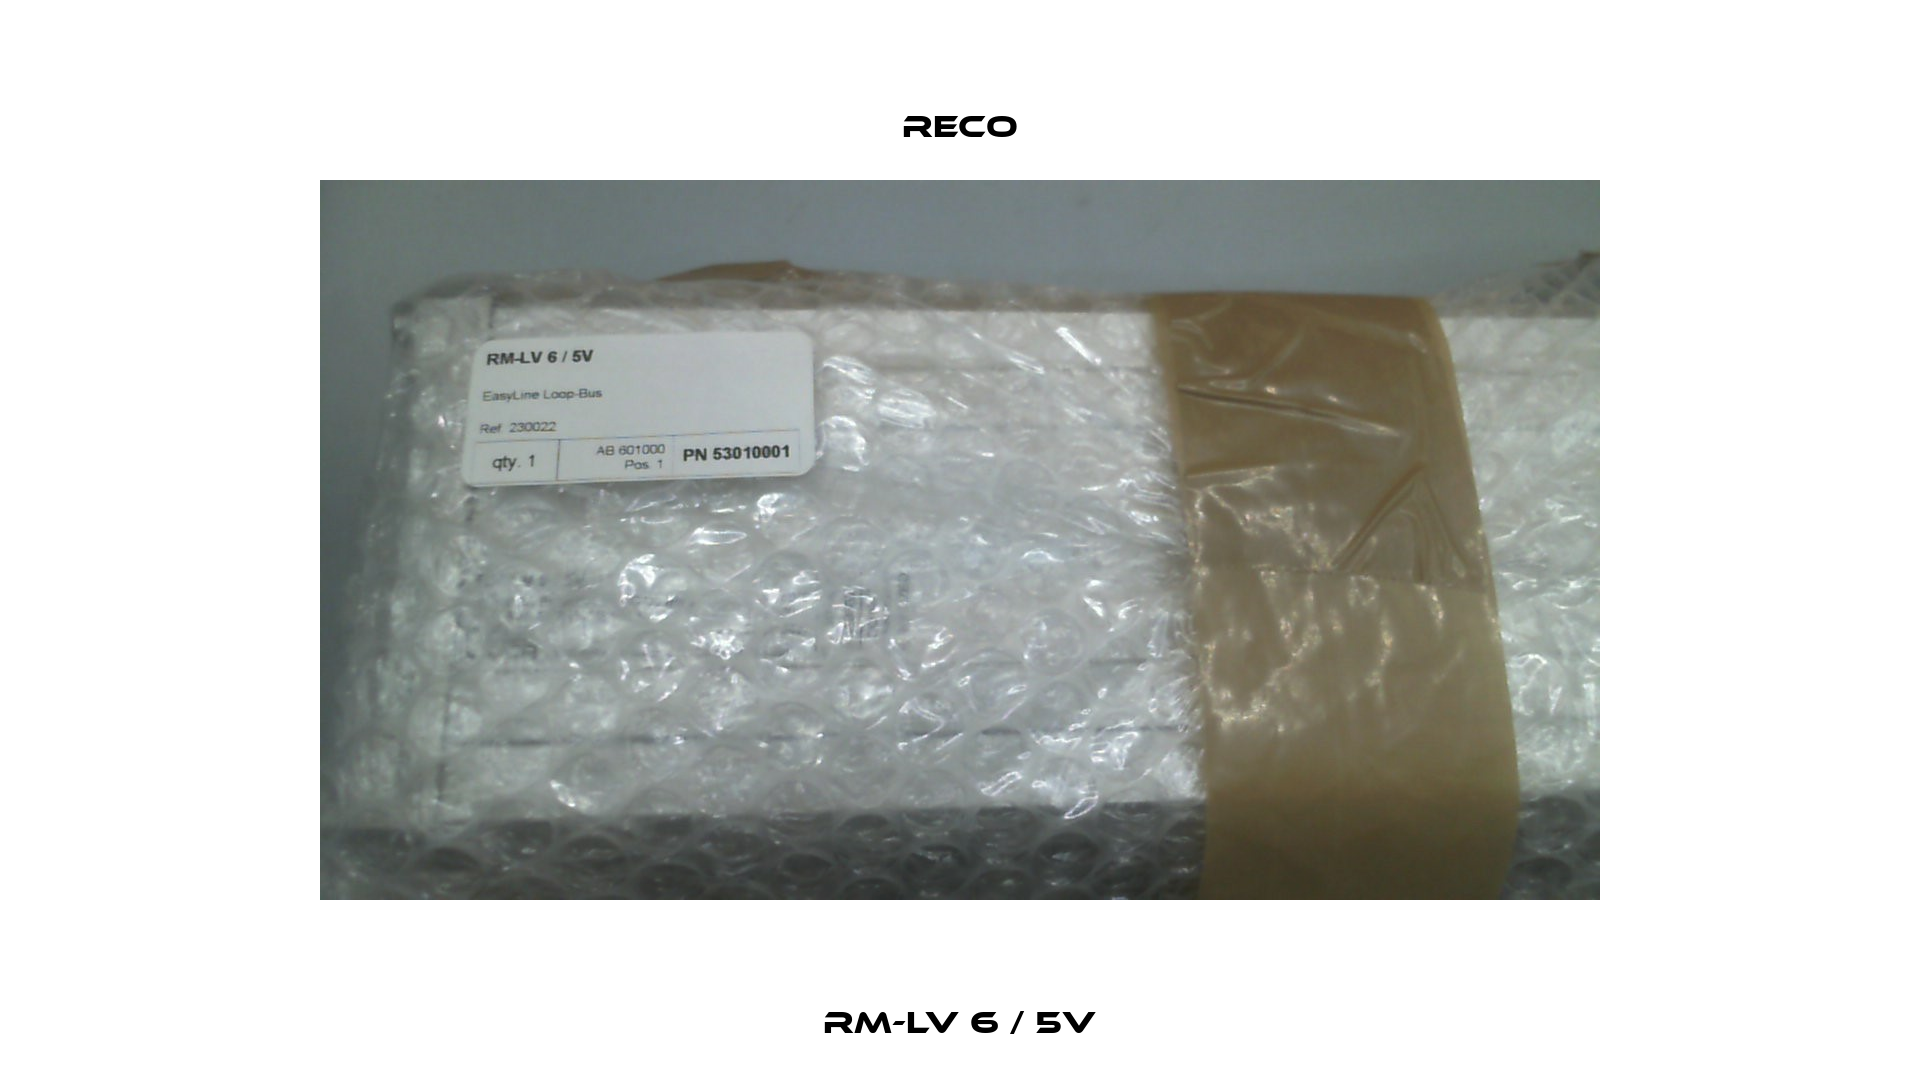 RM-LV 6 / 5V Reco